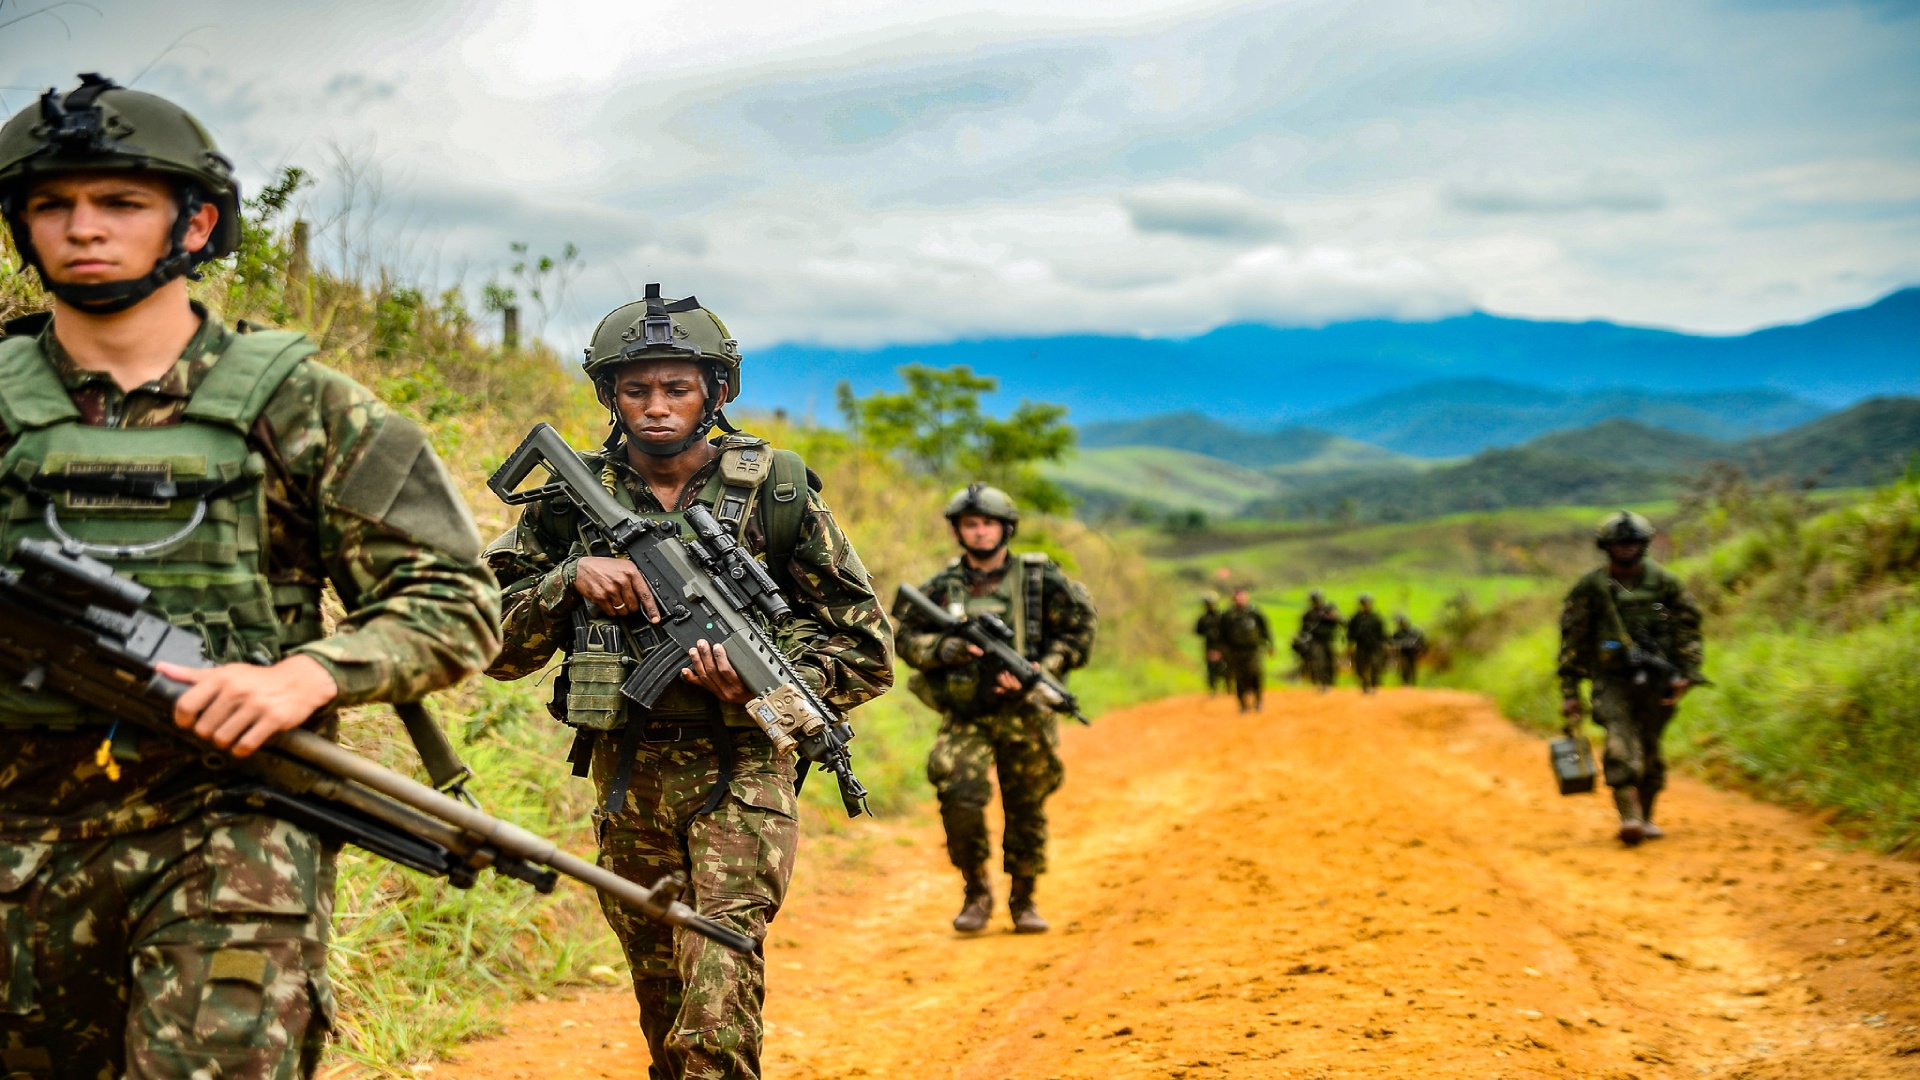 Inscrições do Concurso do Exército Brasileiro estão abertas com remuneração  de até R$ 7 mil - O Hoje.com